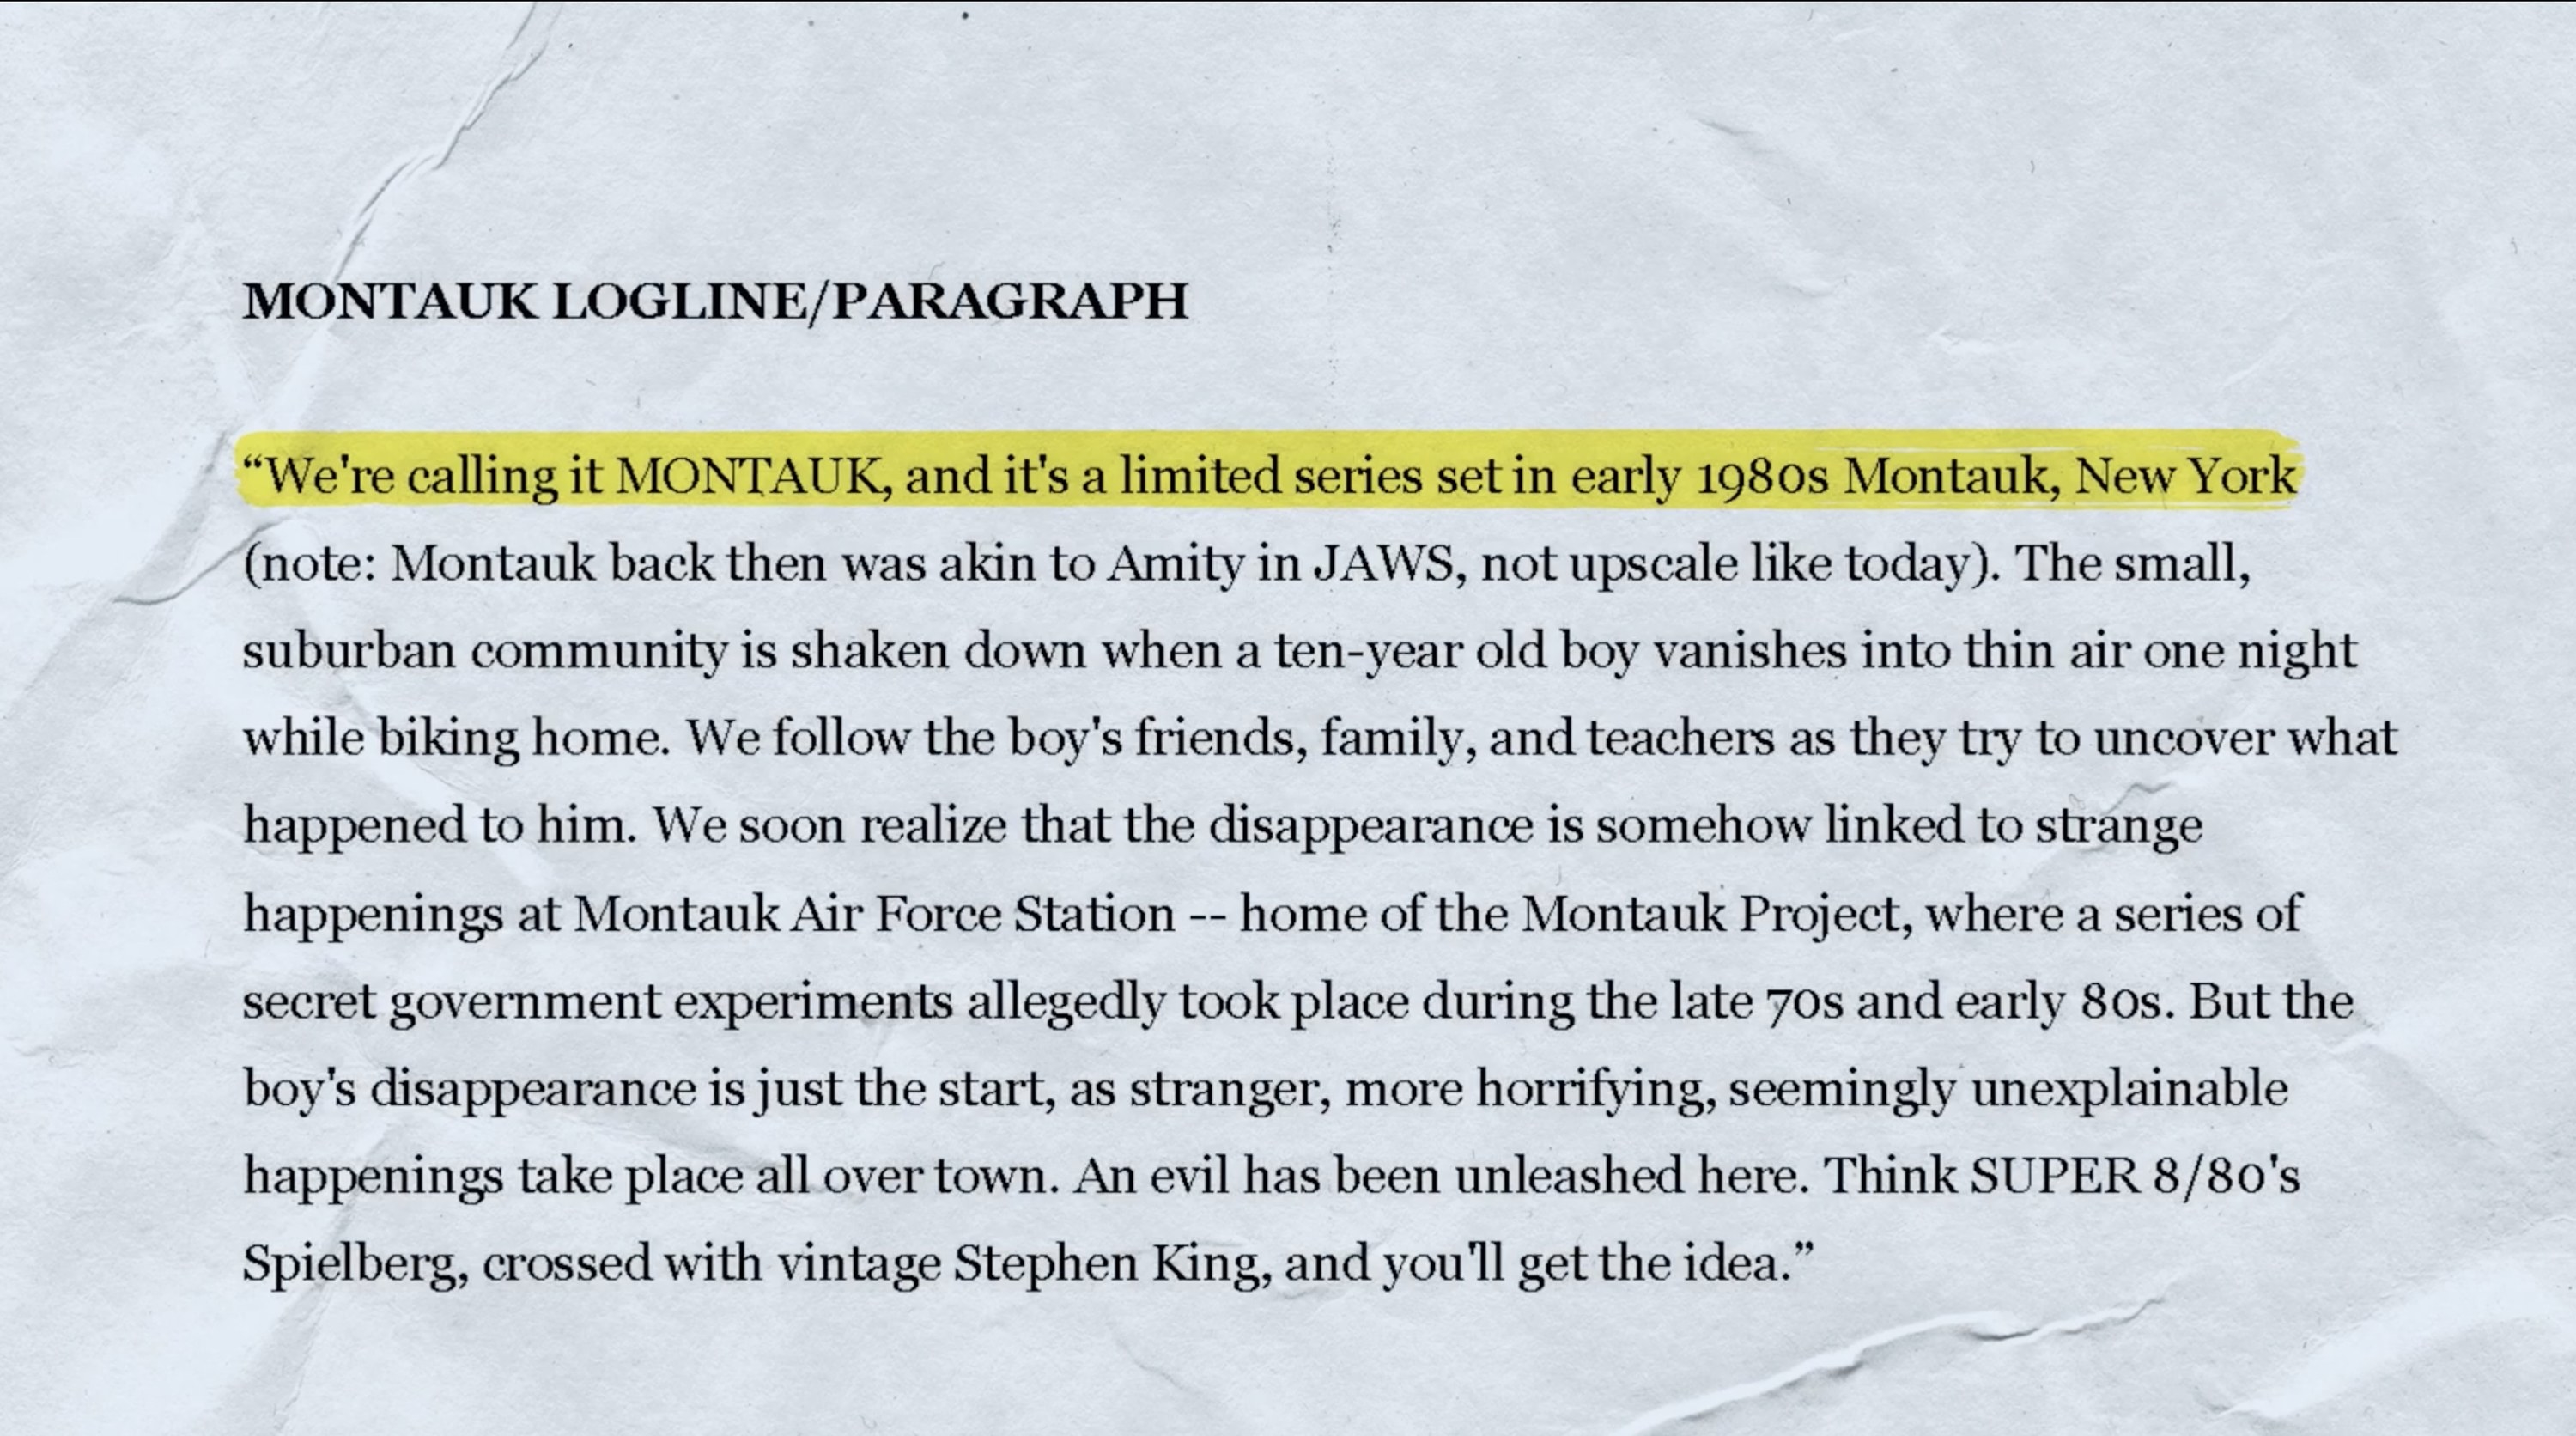 Montauk logline and paragraph description